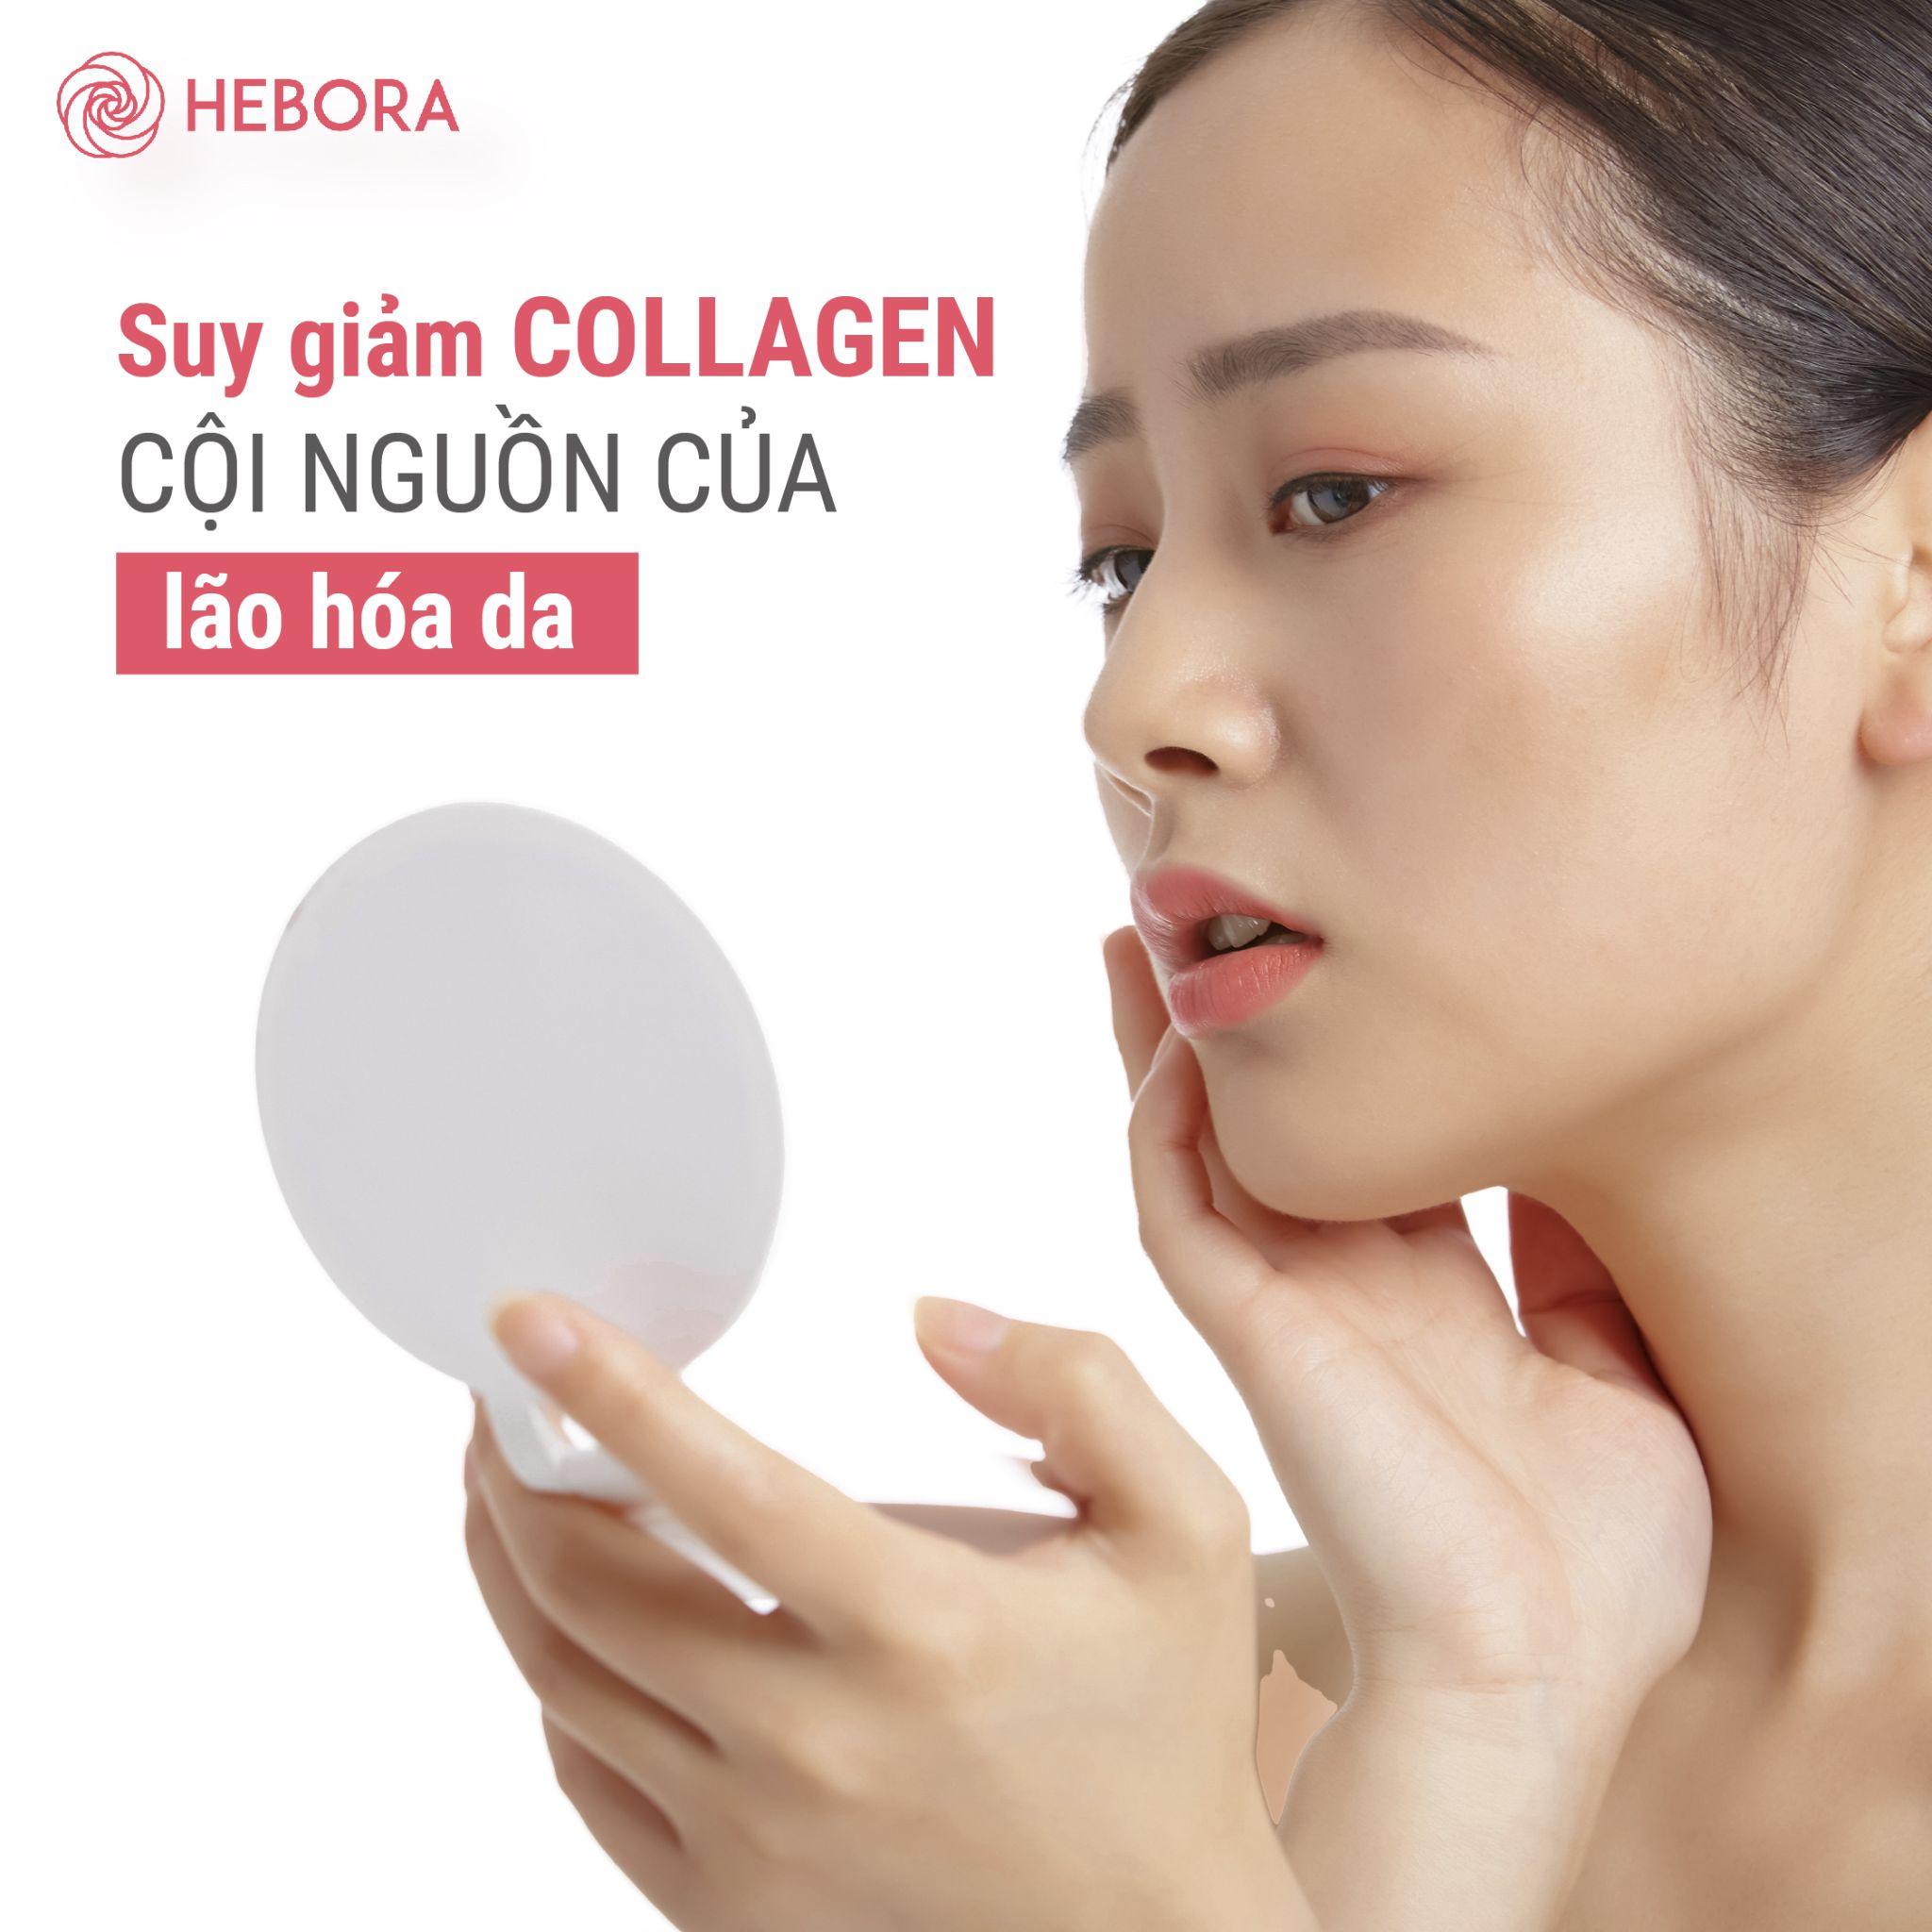 Hướng dẫn lựa chọn Collagen phù hợp để làn da luôn khỏe mạnh - 3